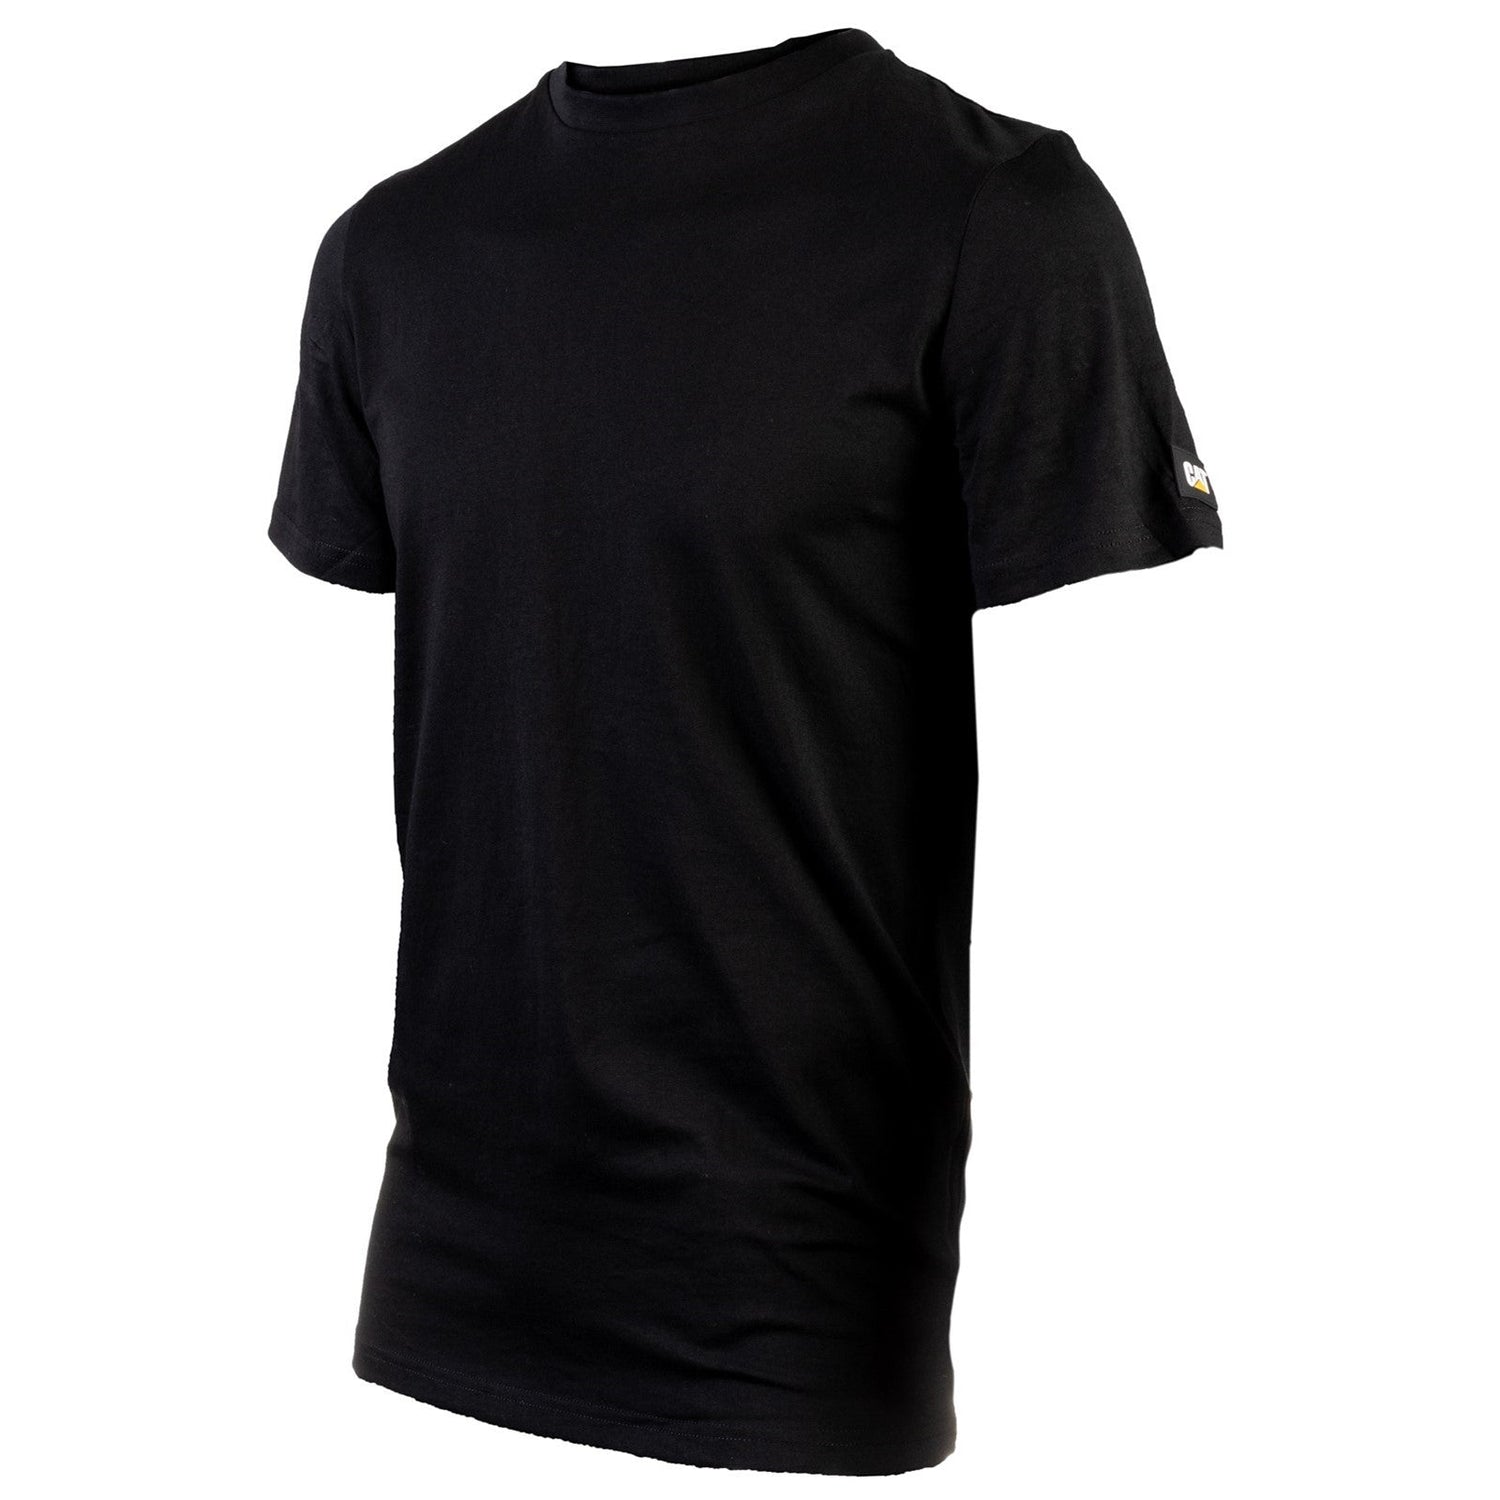 Caterpillar Essentials Short Sleeve T Shirt. Black. Front View 